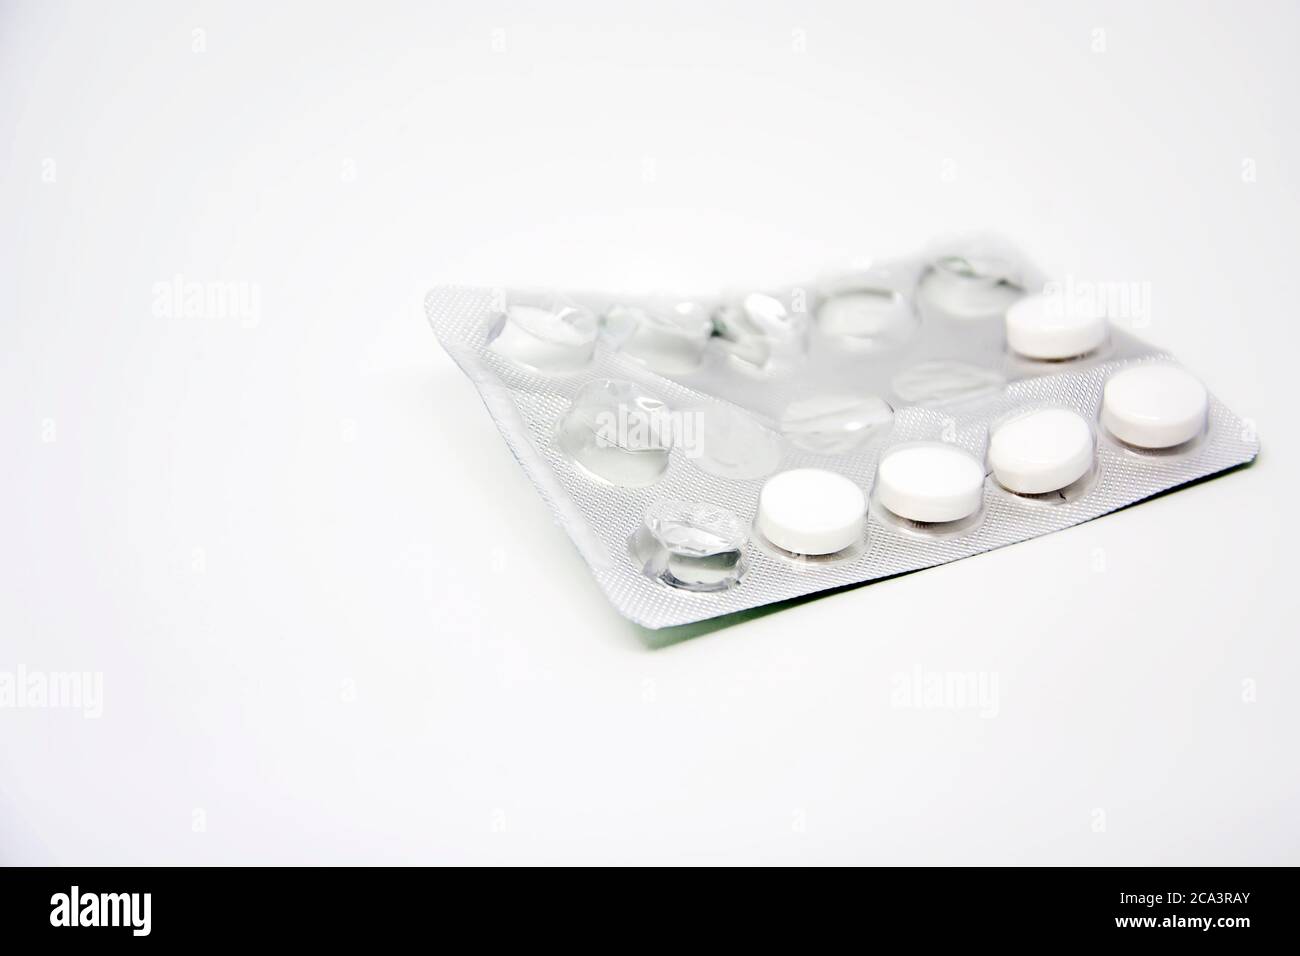 Un blister utilisé avec quelques pilules manquantes isolé sur un fond blanc. Médicaments et produits pharmaceutiques. Banque D'Images